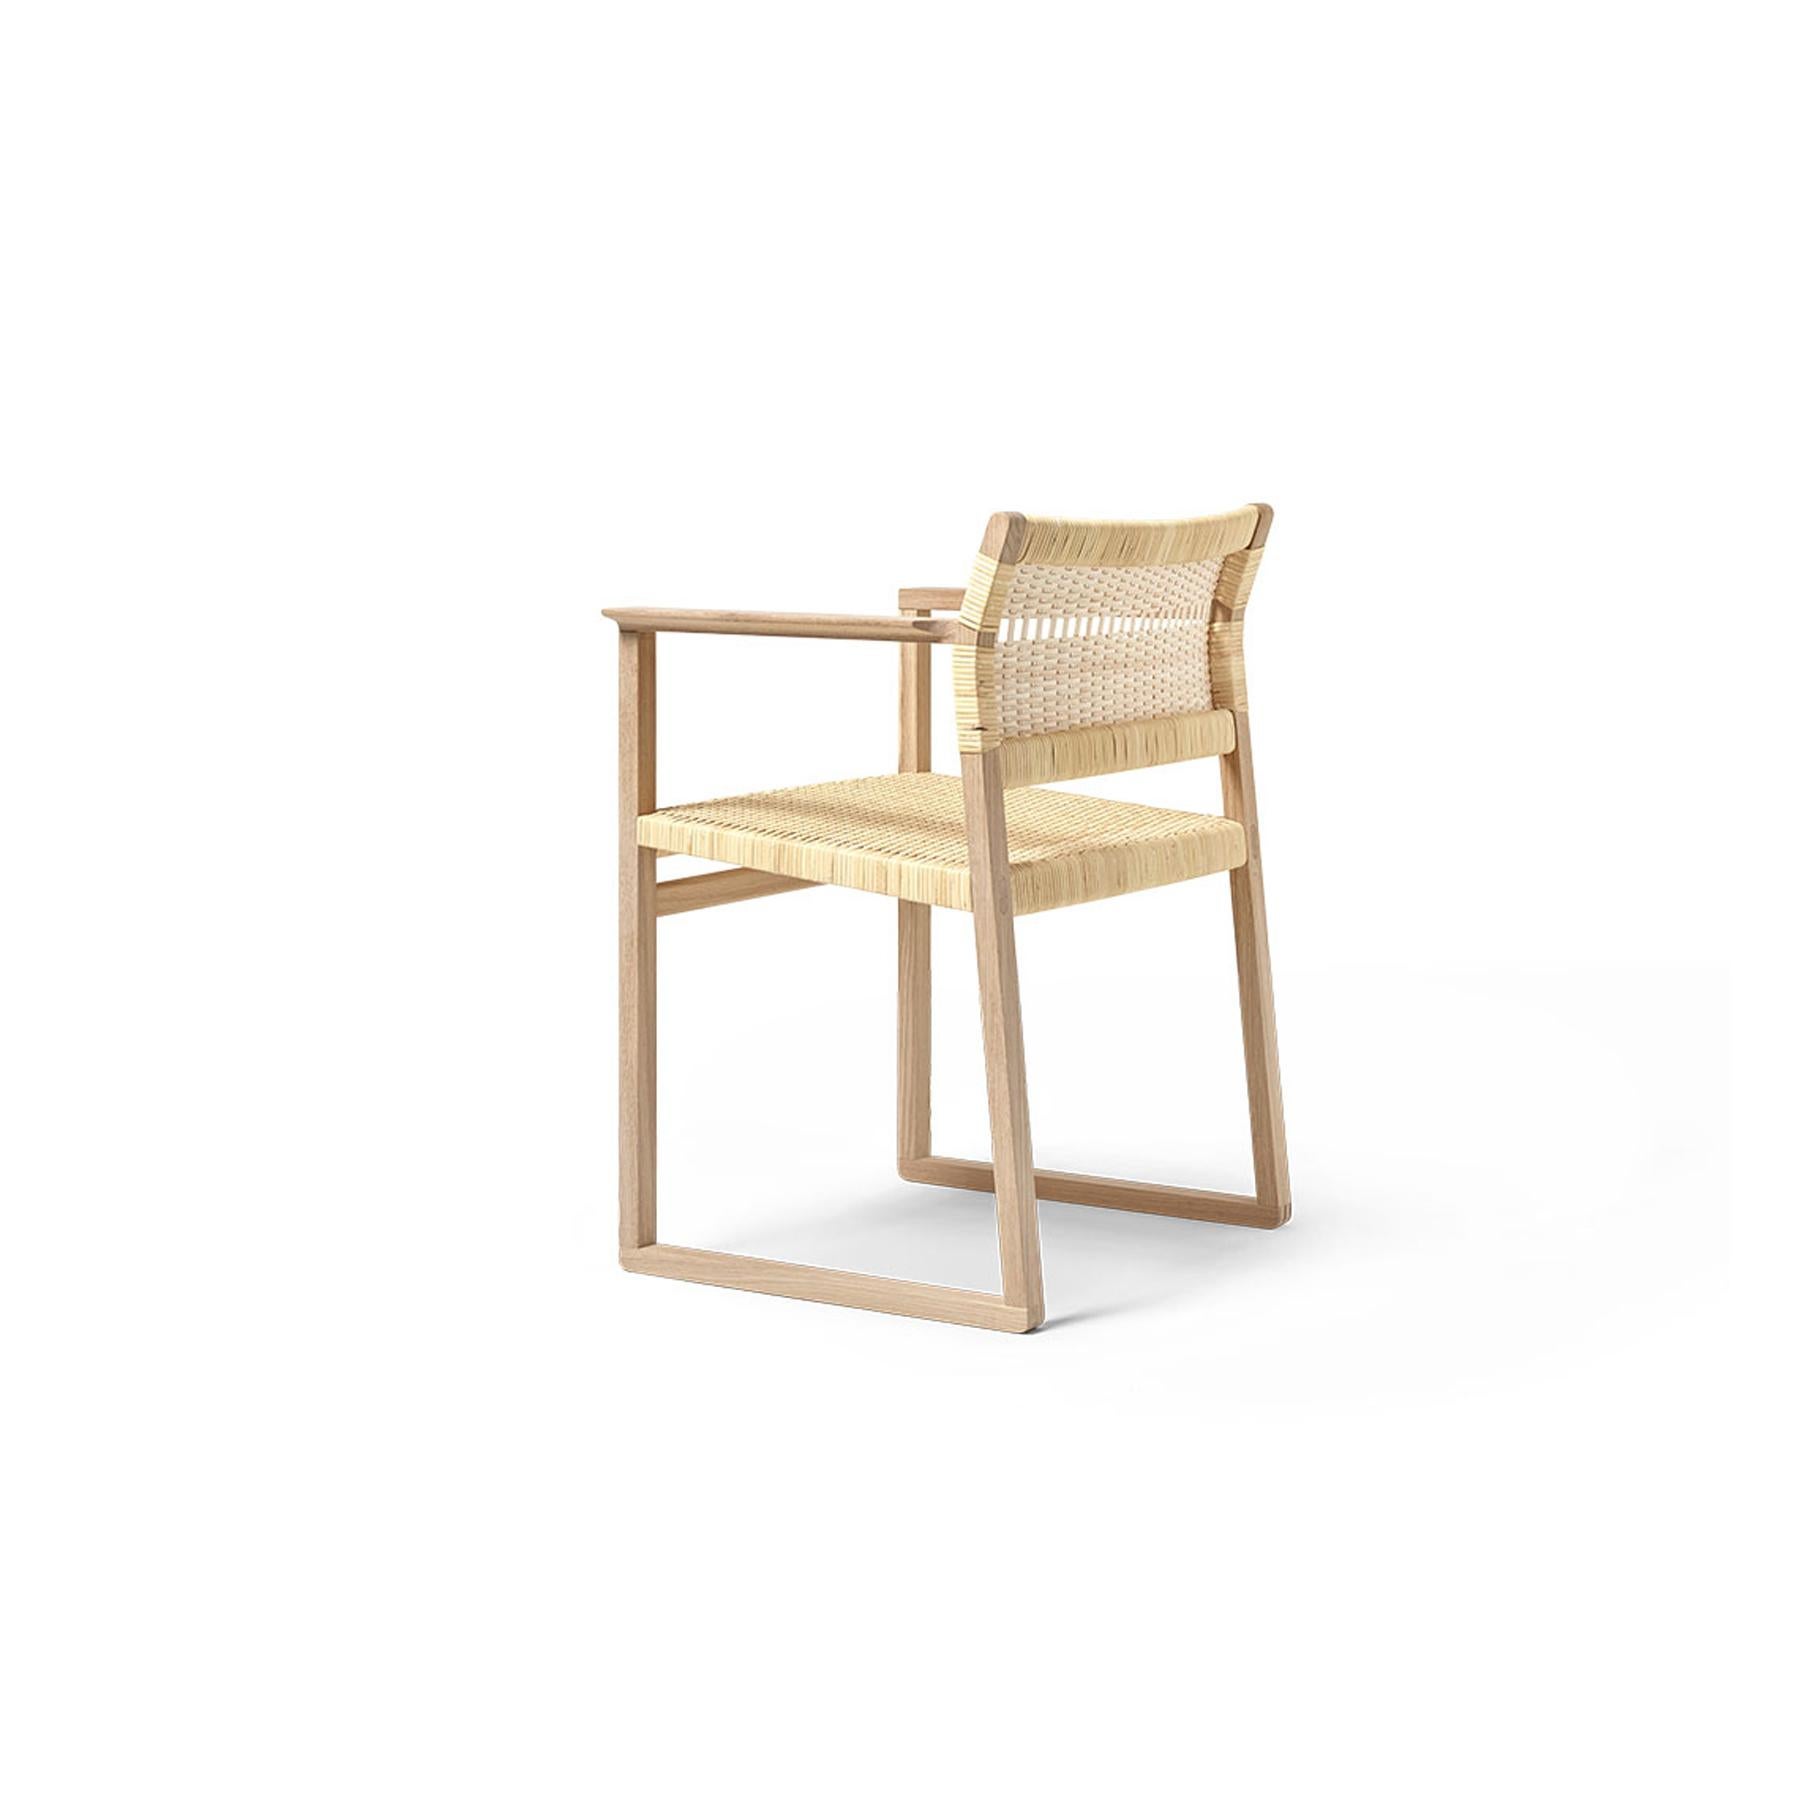 Svelte mais solide, simple mais frappant, le fauteuil BM62 nous ramène à la nature dans un retour bienvenu aux formes simples qui capturent l'essence d'un concept. Construction exposée. Et des matériaux authentiques qui survivent à toute tendance